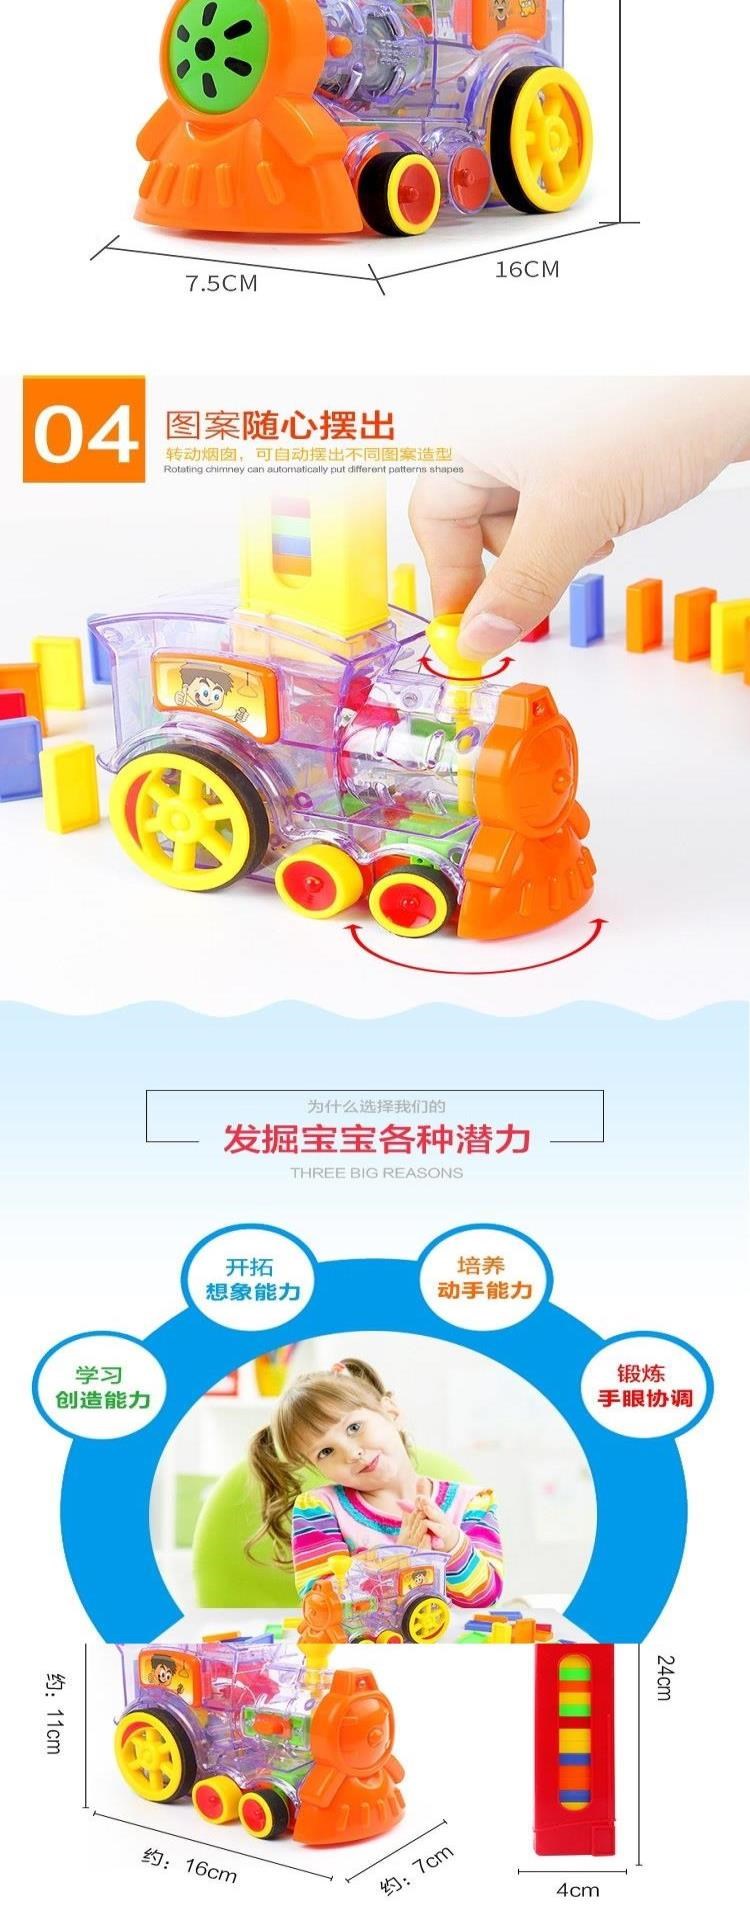 Douyin, đồ chơi khối xây dựng dành cho trẻ em domino tiêu chuẩn giống nhau, các quân domino màu tự động được đưa vào xe lửa - Khối xây dựng